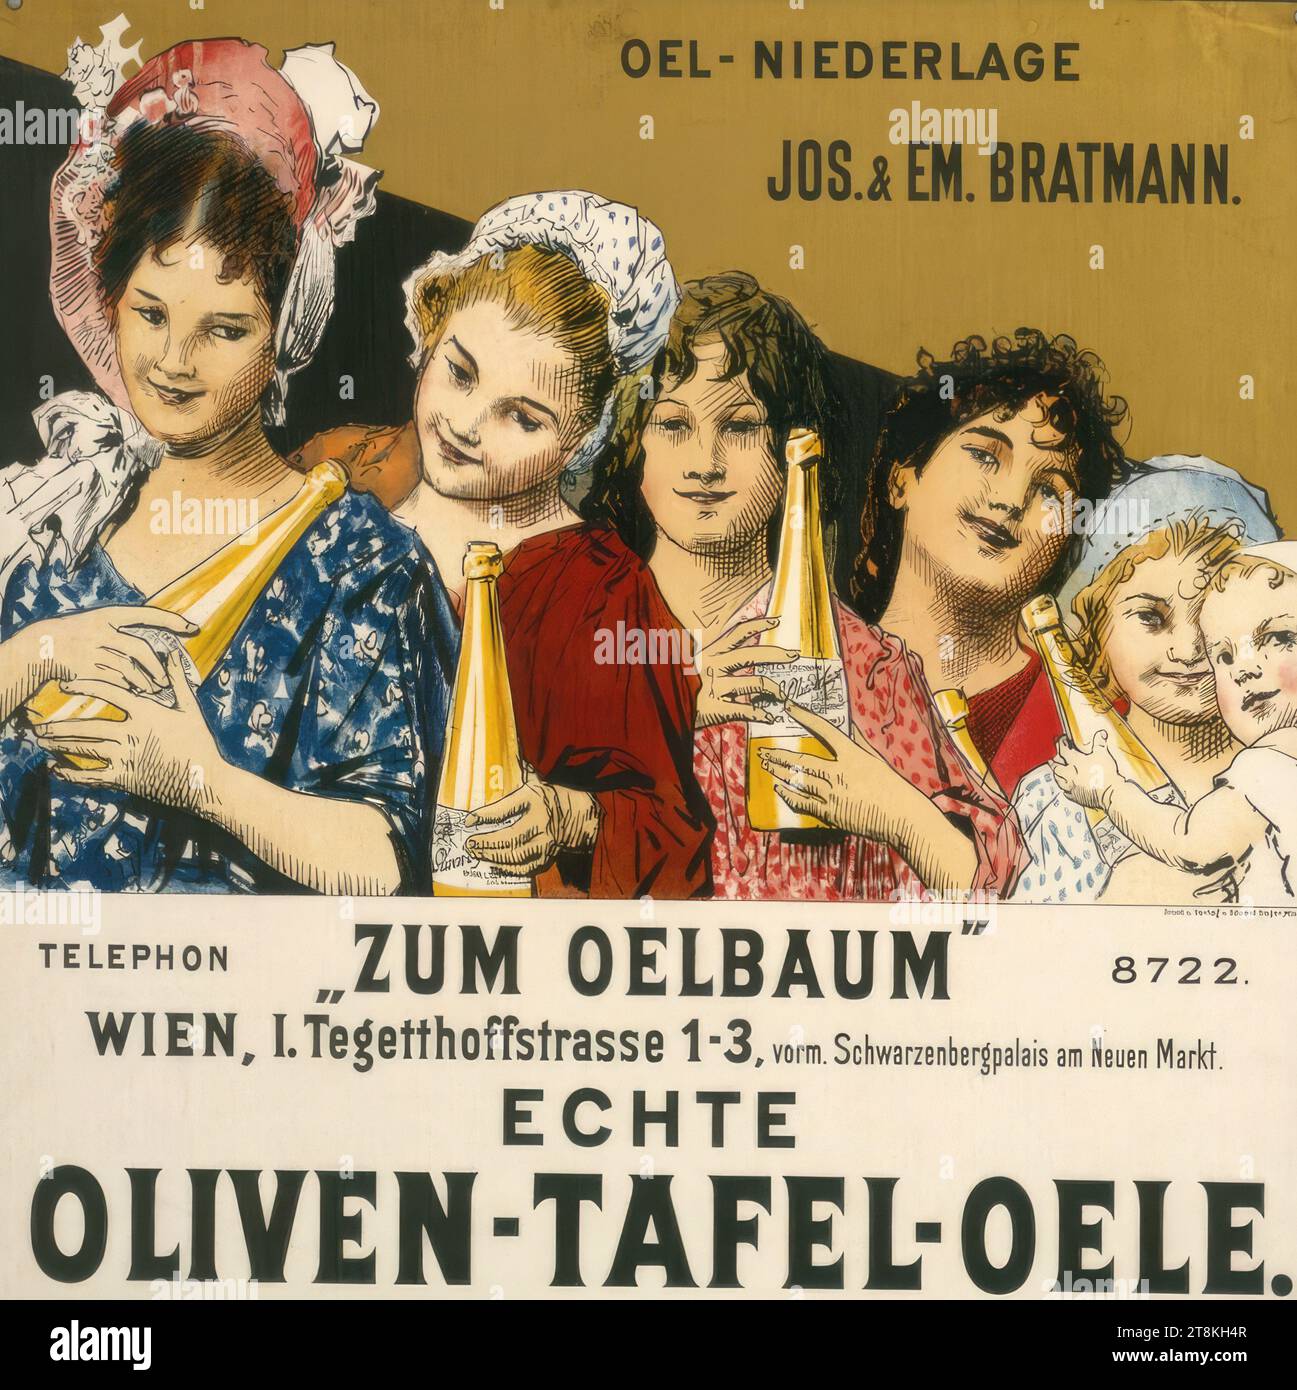 JOS. & EM. FRITEUSE. 'ZUM OELBAUm', Eduard Veith, Neutitschein 1856 - 1925 Vienne, vers 1900, tirage, lithographie couleur, feuille : 615 mm x 500 mm, Autriche Banque D'Images